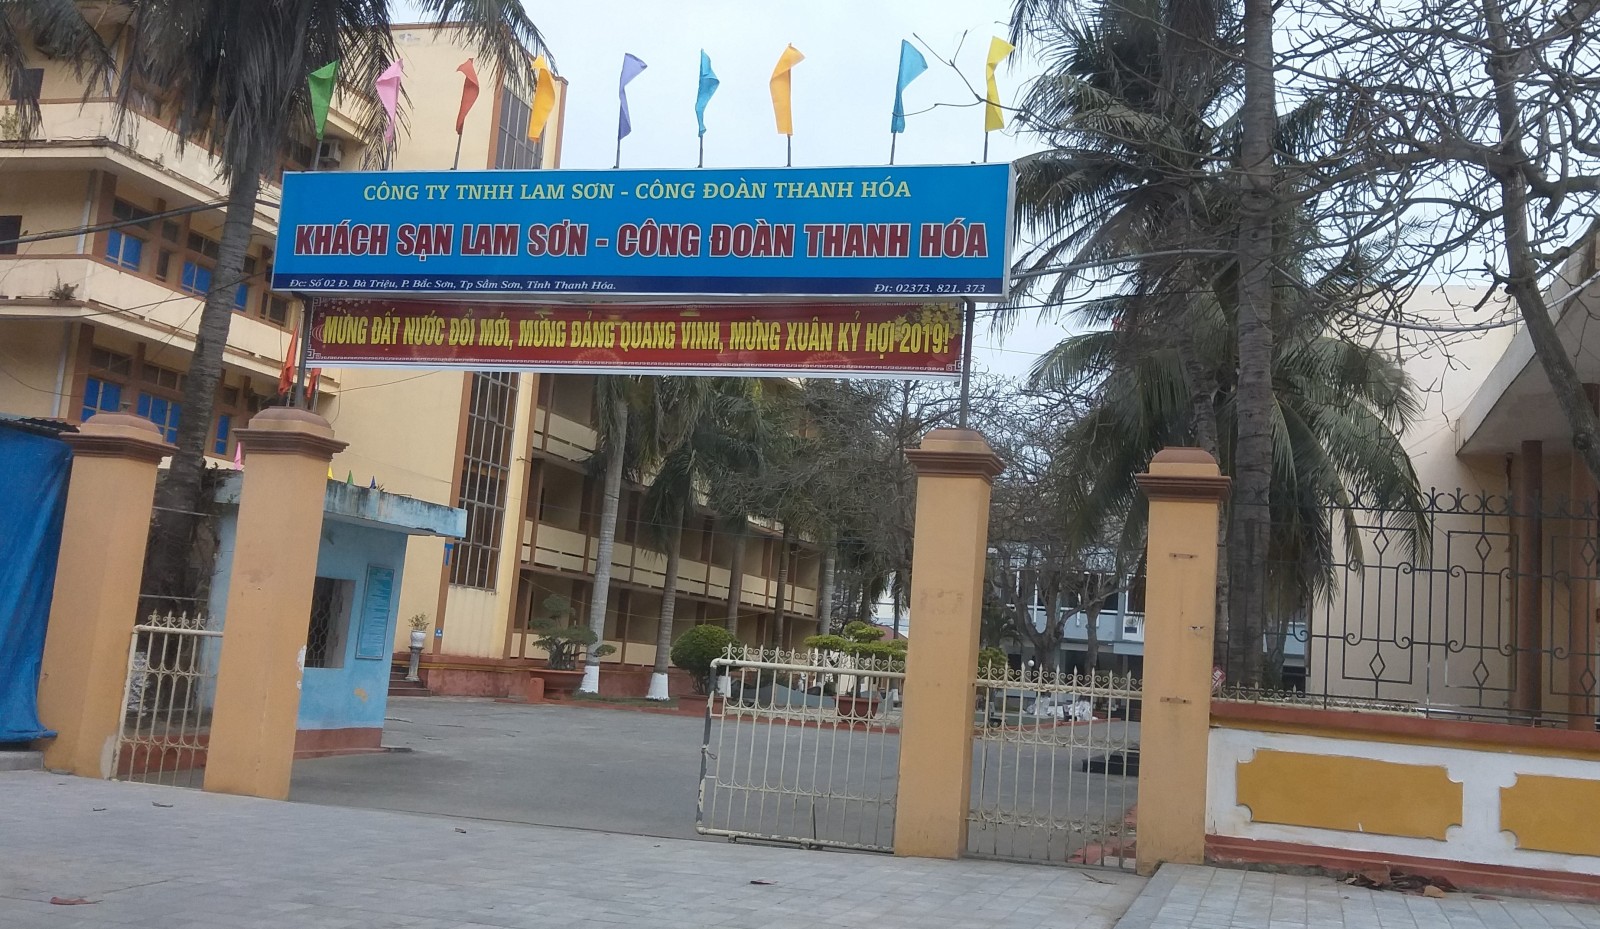 Khách sạn Công đoàn Sầm Sơn nay đã có tên mới.